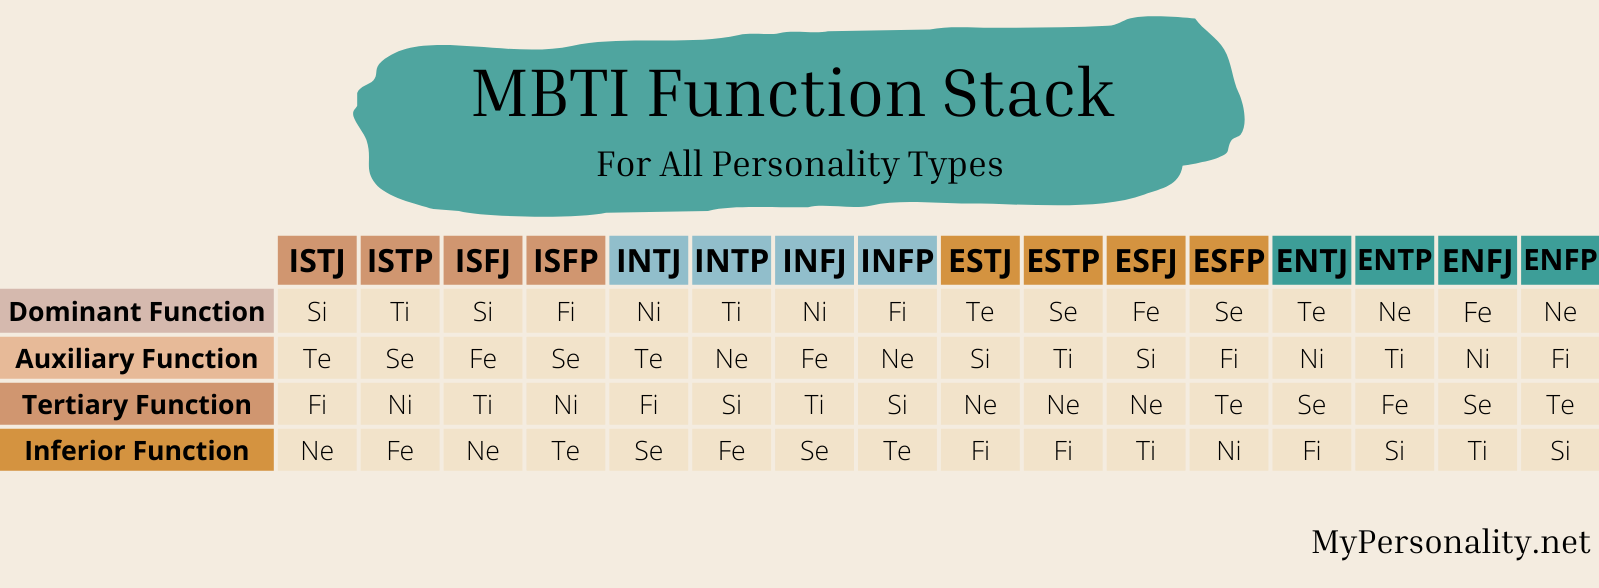 MBTI Function Stack